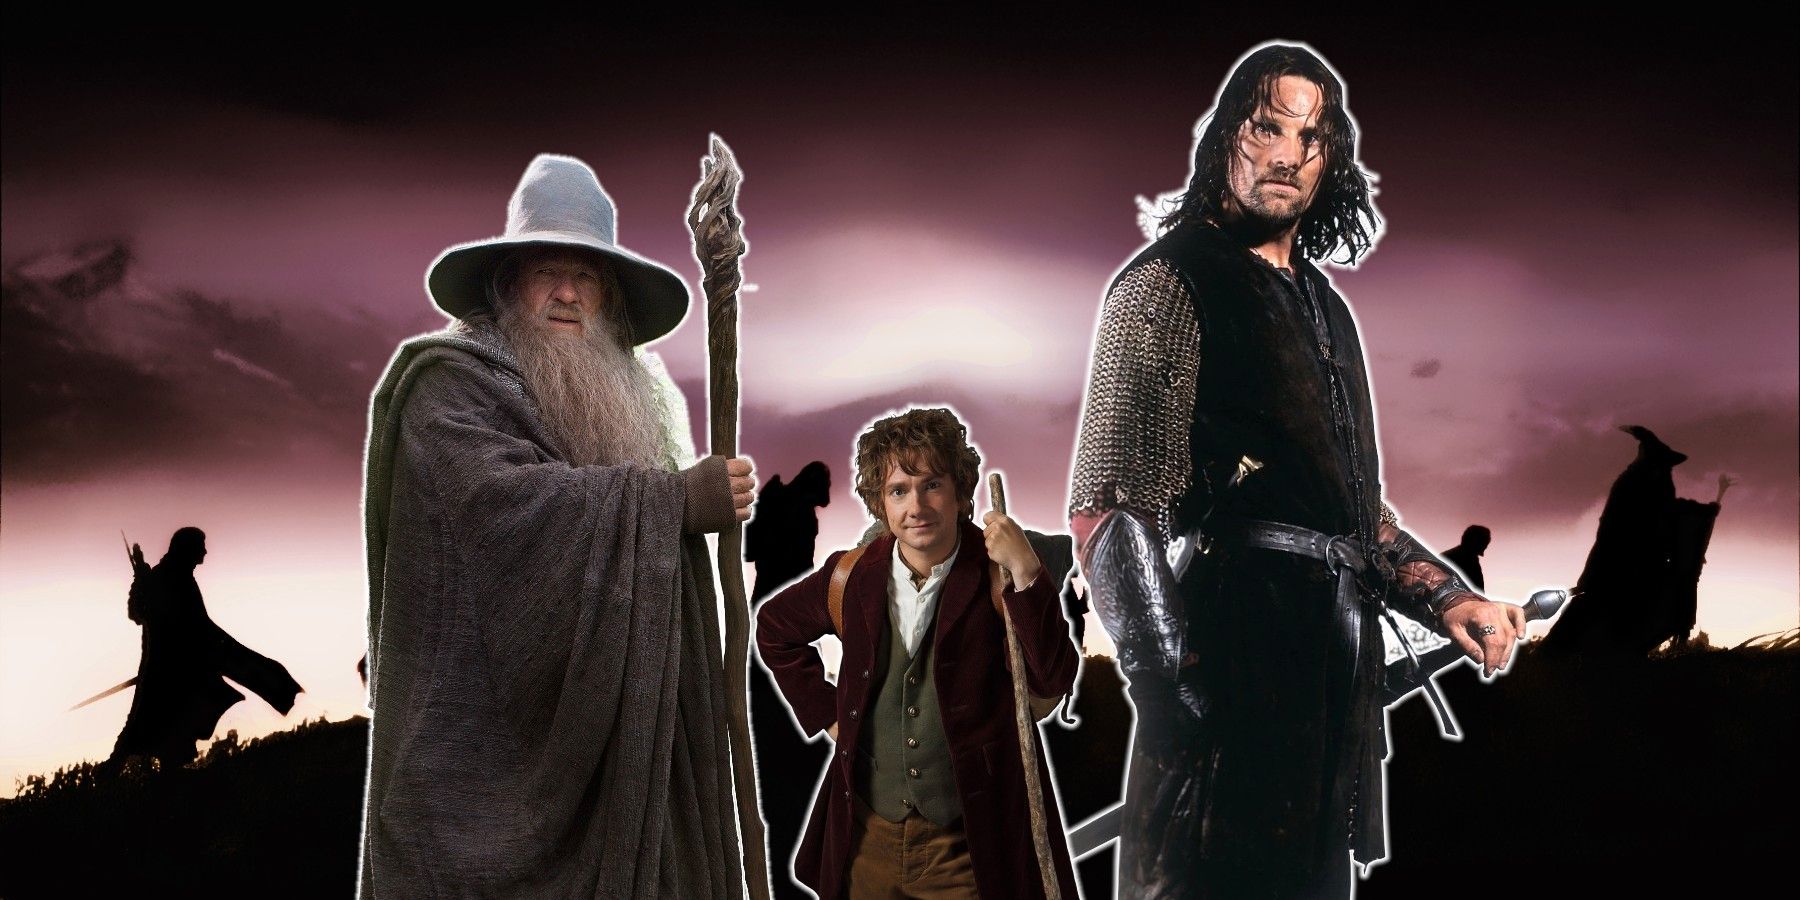 Afbeelding legt uit hoe lang de Lord of the Rings-personages zijn